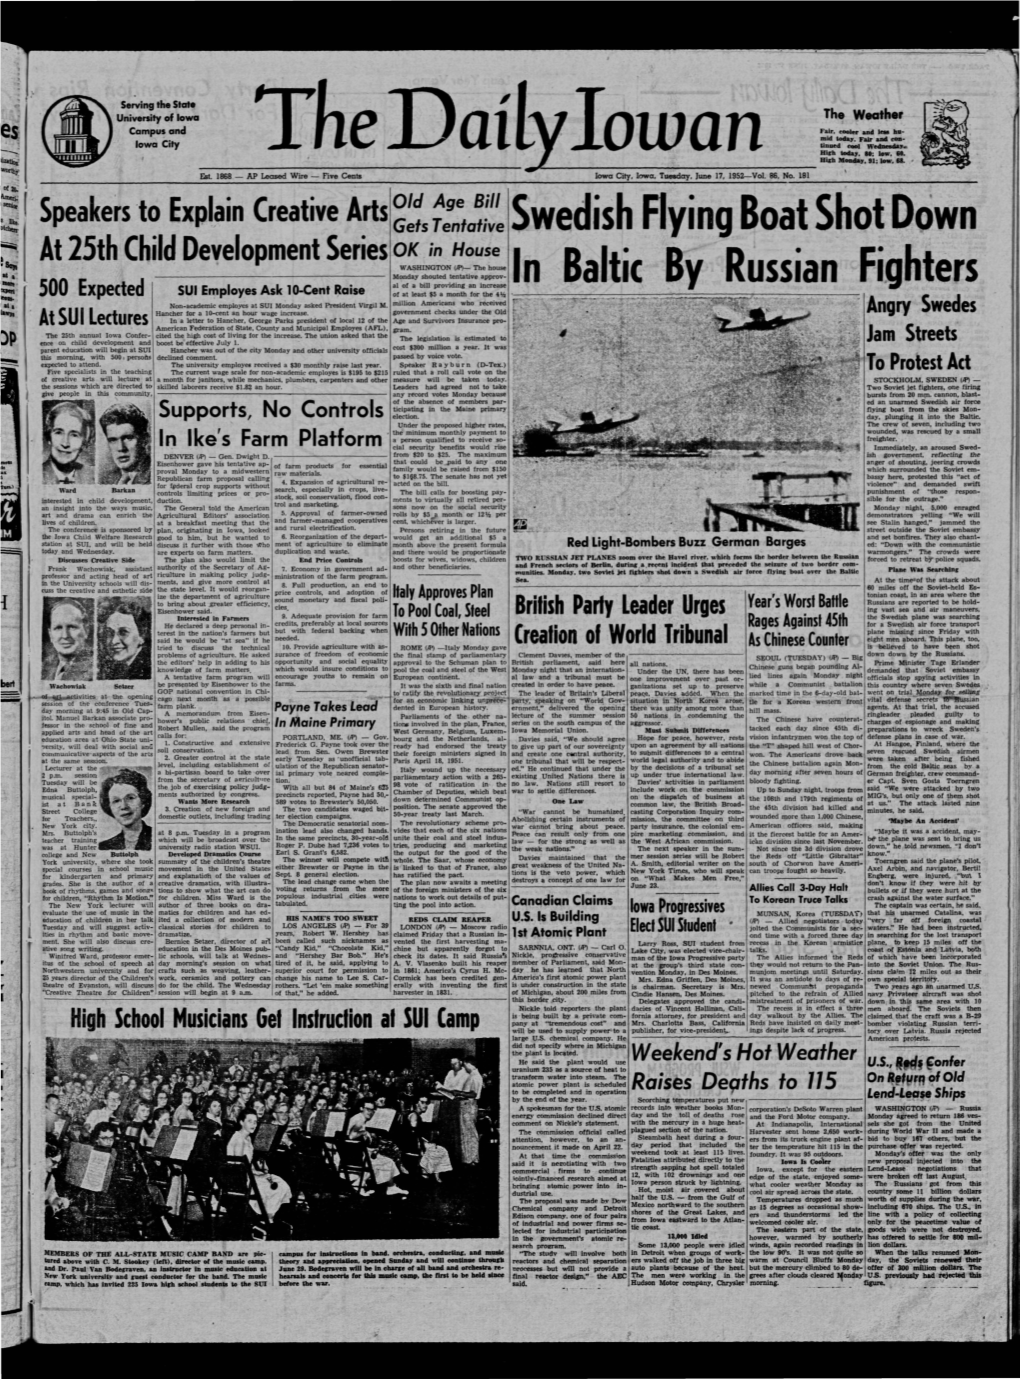 Daily Iowan (Iowa City, Iowa), 1952-06-17